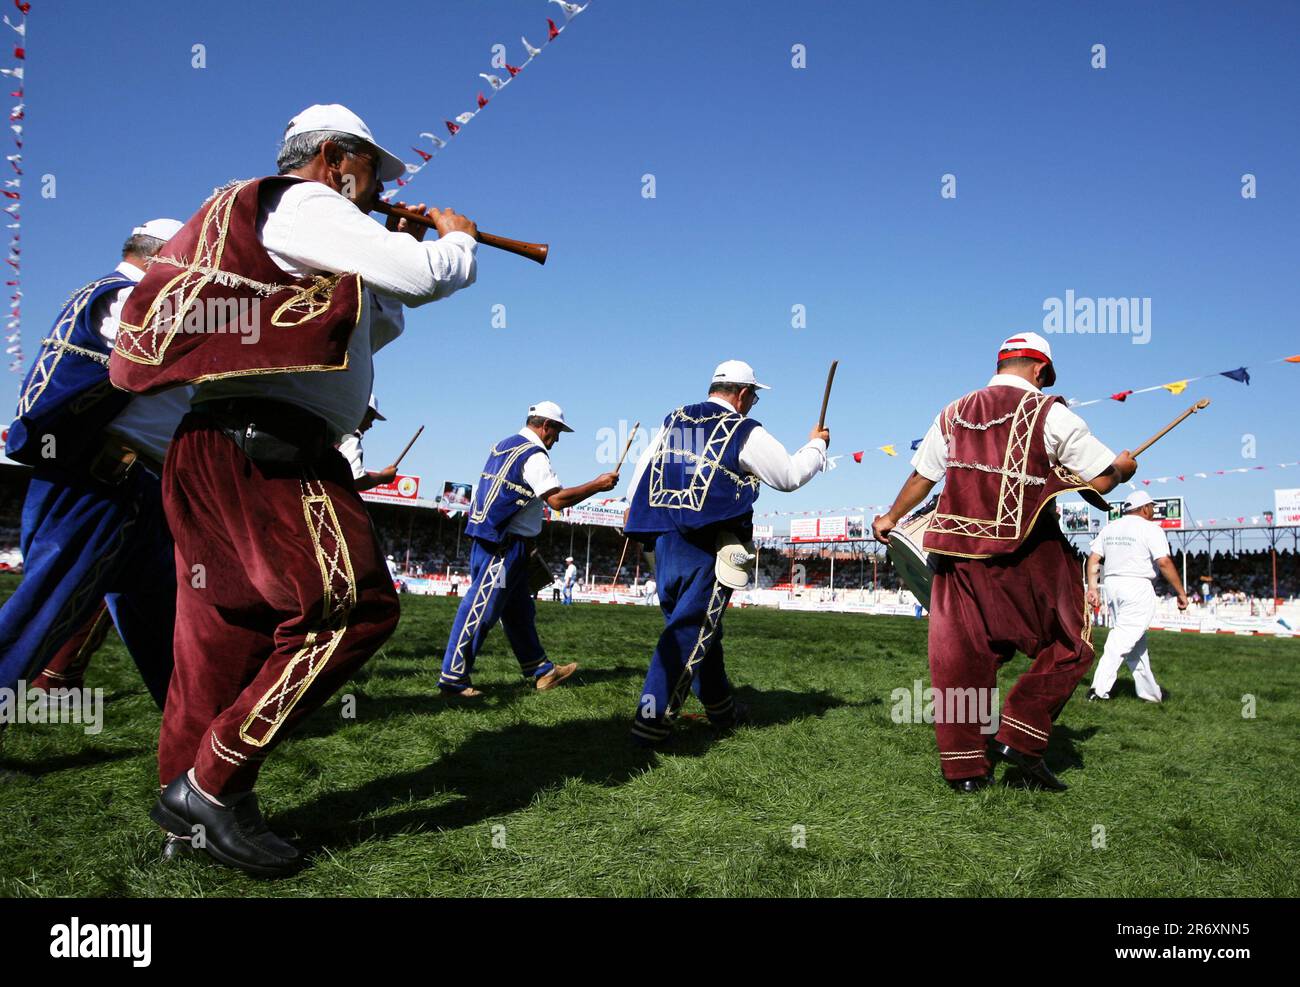 Des musiciens vêtus d'uniformes colorés se produisent sur l'arène au Elmali Turque Oil Wrestling Festival à Turkiye. Banque D'Images